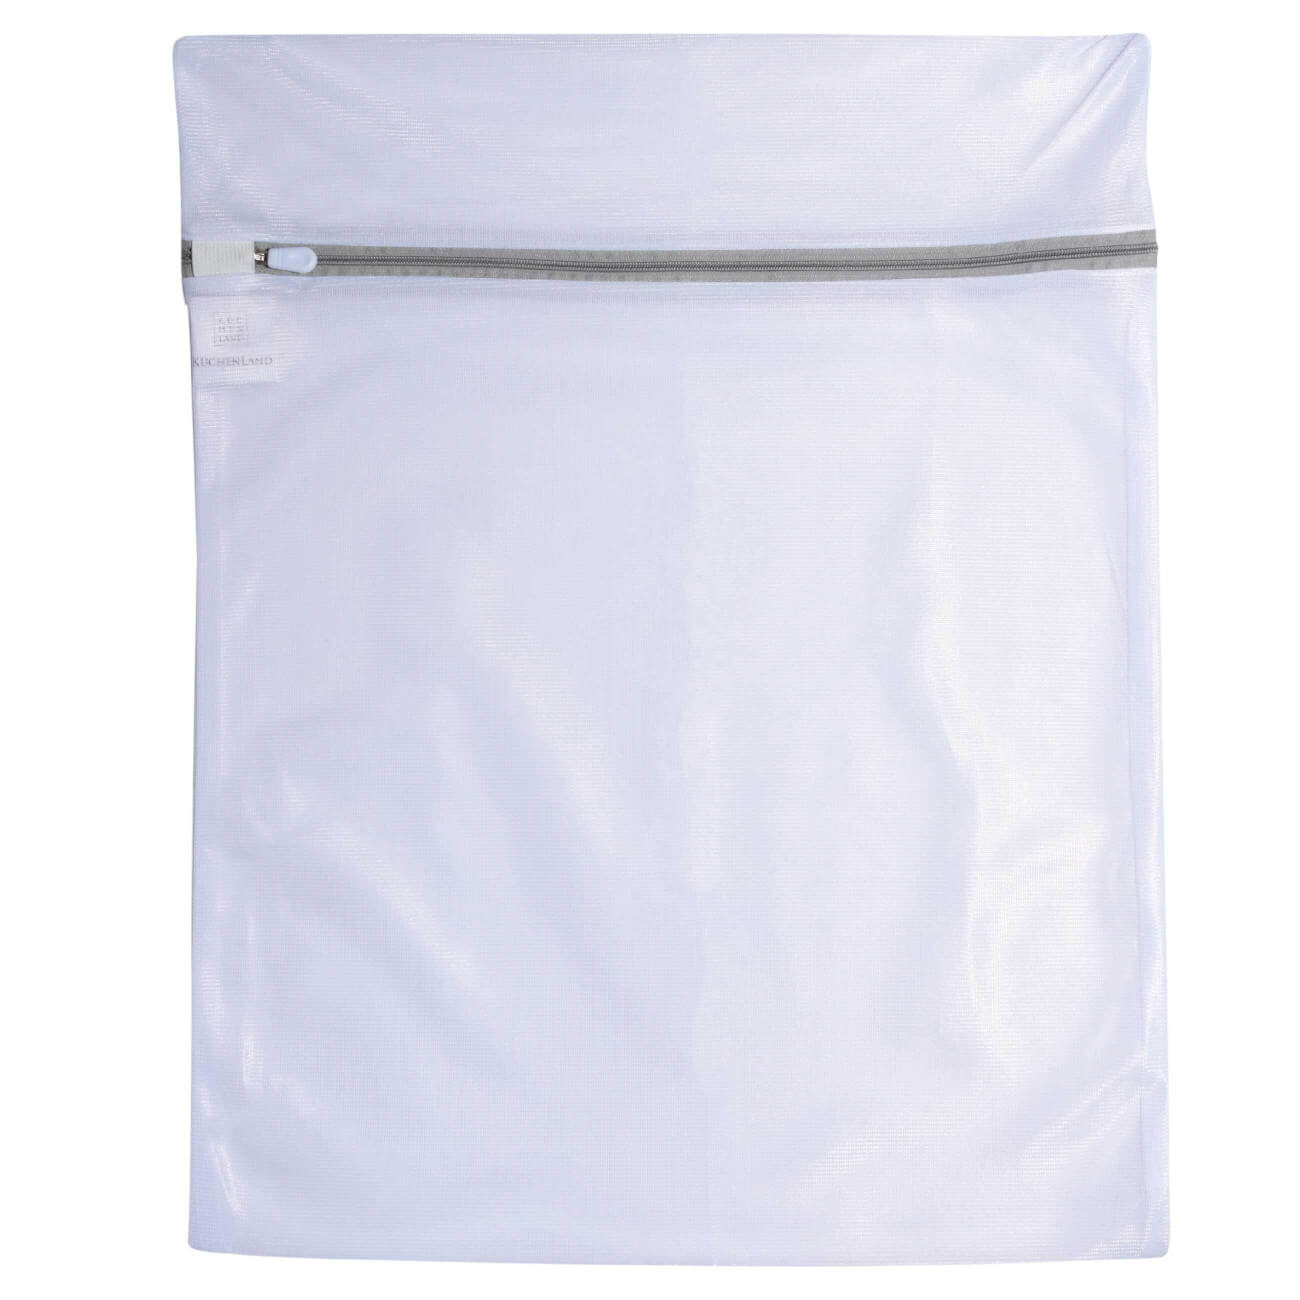 Мешок для стирки одежды, 40х50 см, полиэстер, бело-серый, Safety plus мешок для стирки носков и колготок 22х33 см полиэстер бело серый safety